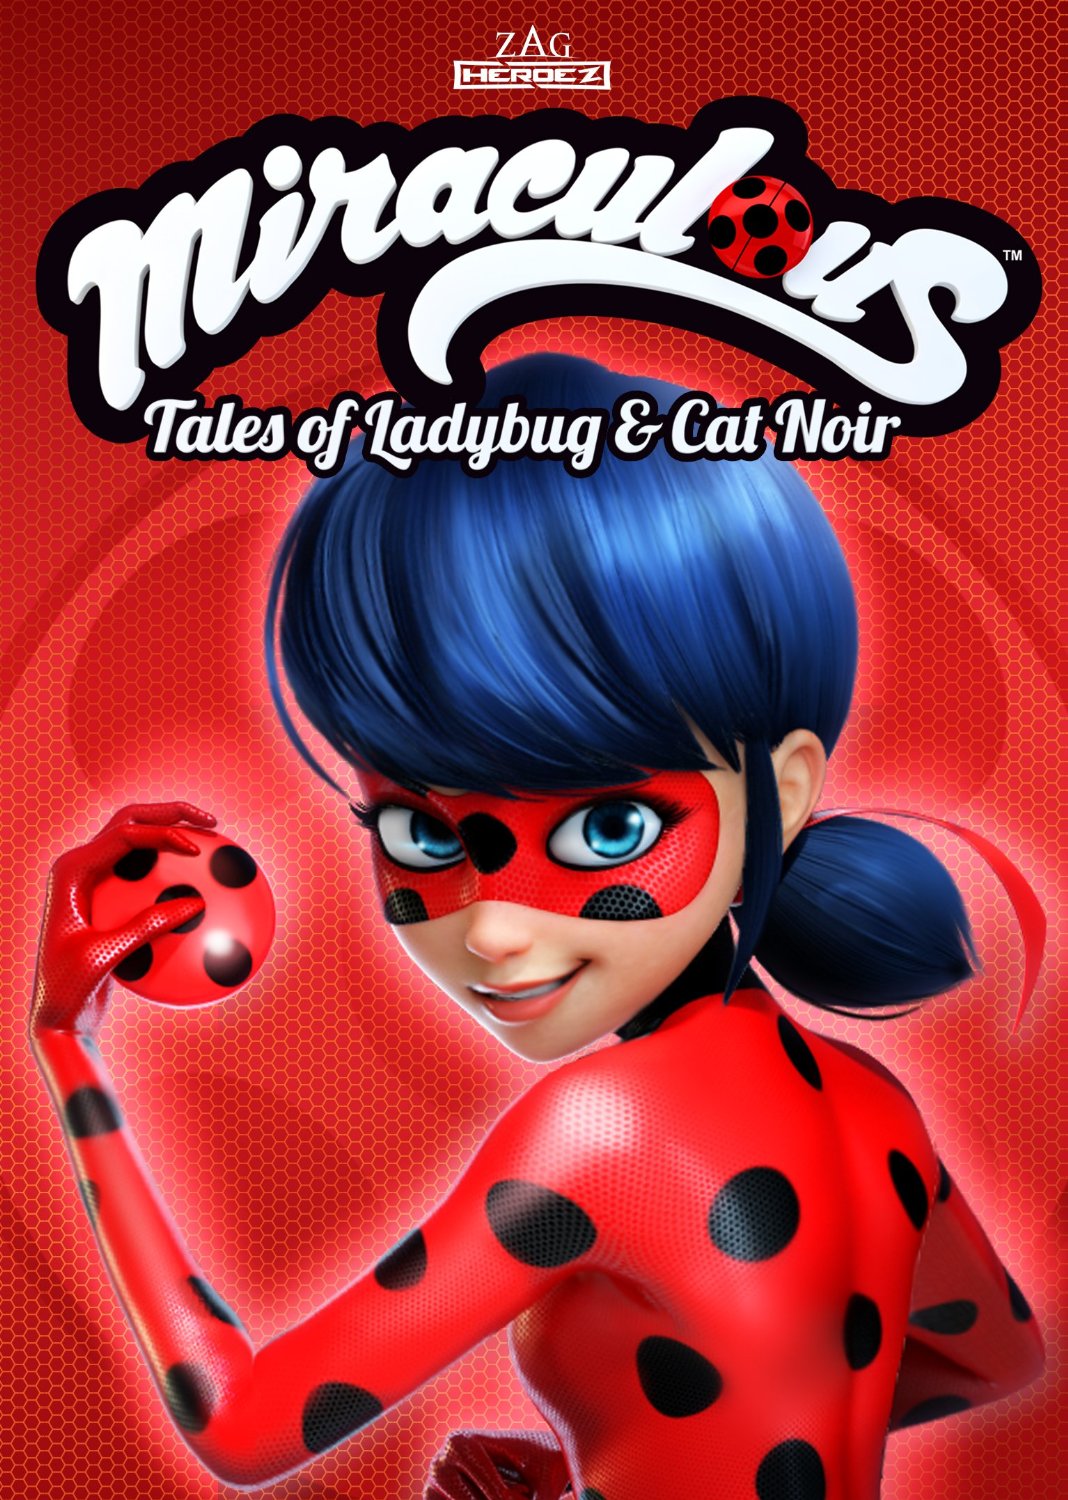 Miraculous: Tales Of Ladybug & Cat Noir Backgrounds, Compatible - PC, Mobile, Gadgets| 1068x1500 px